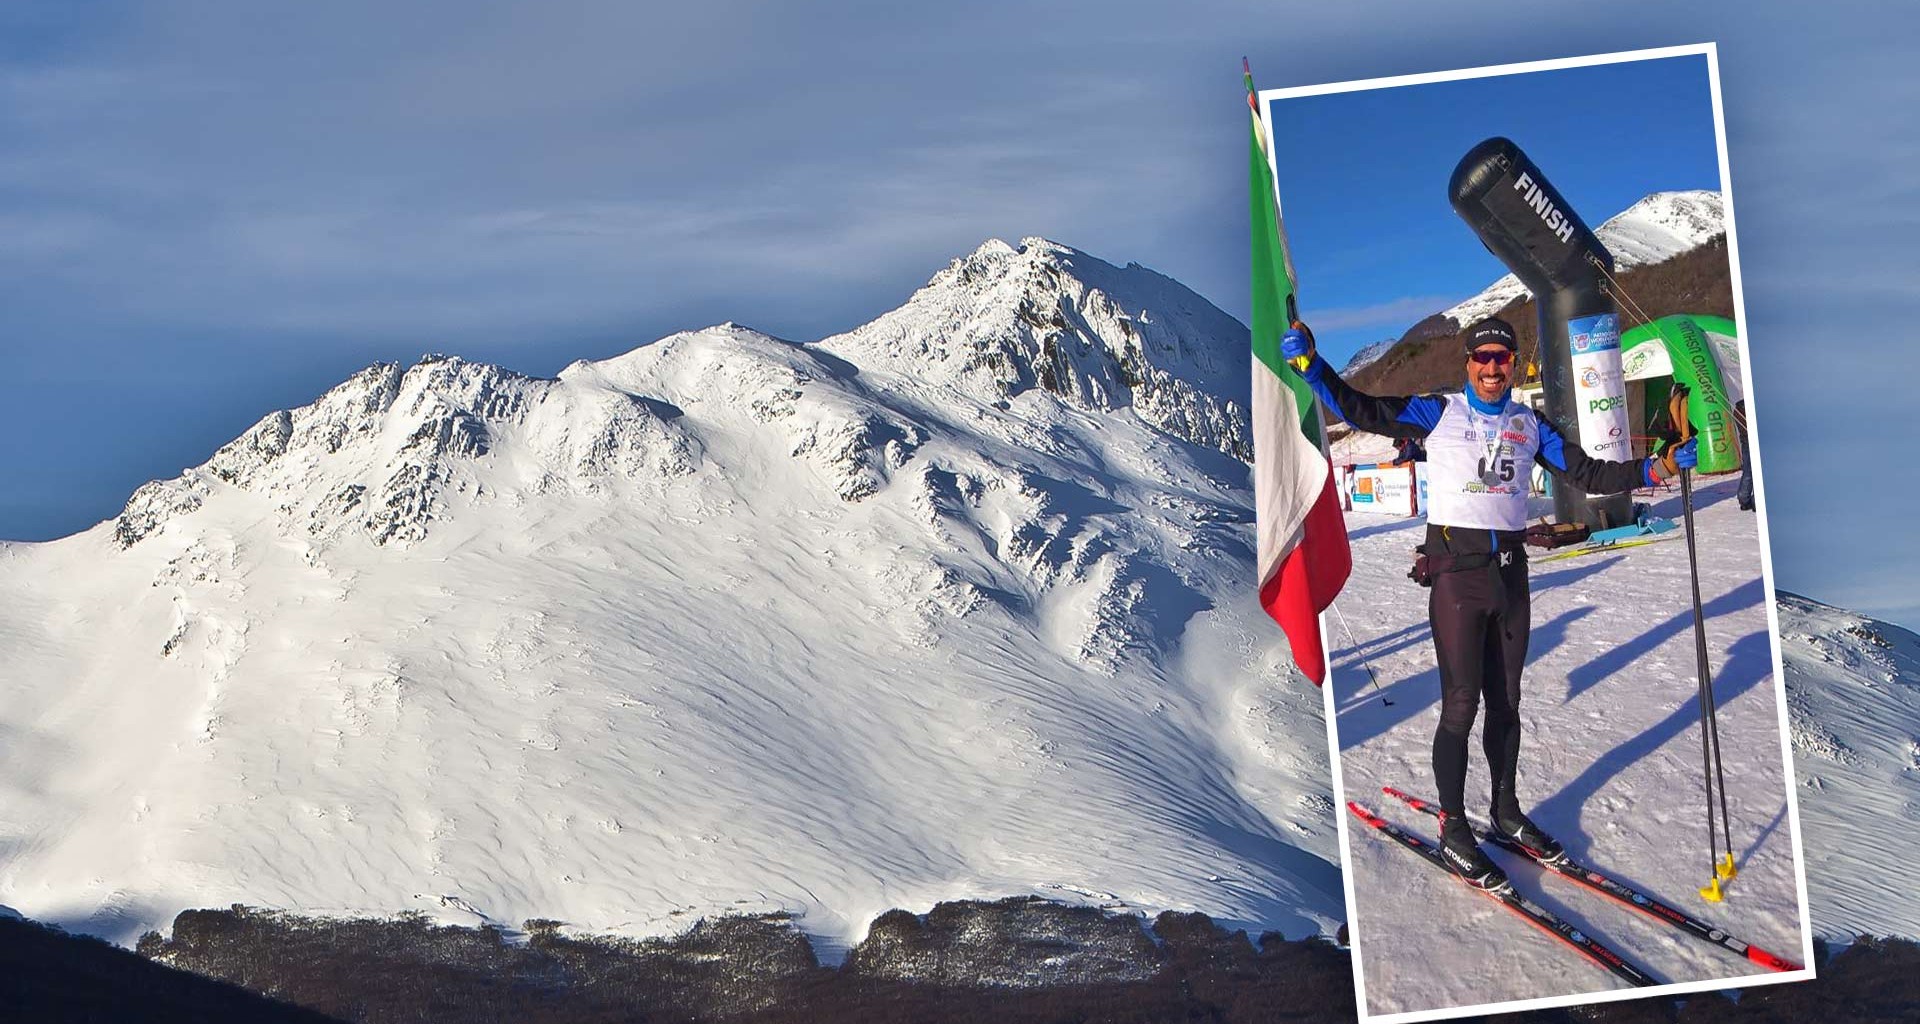 Logra EXATEC hazaña: vence al dolor y consigue primer podio en esquí